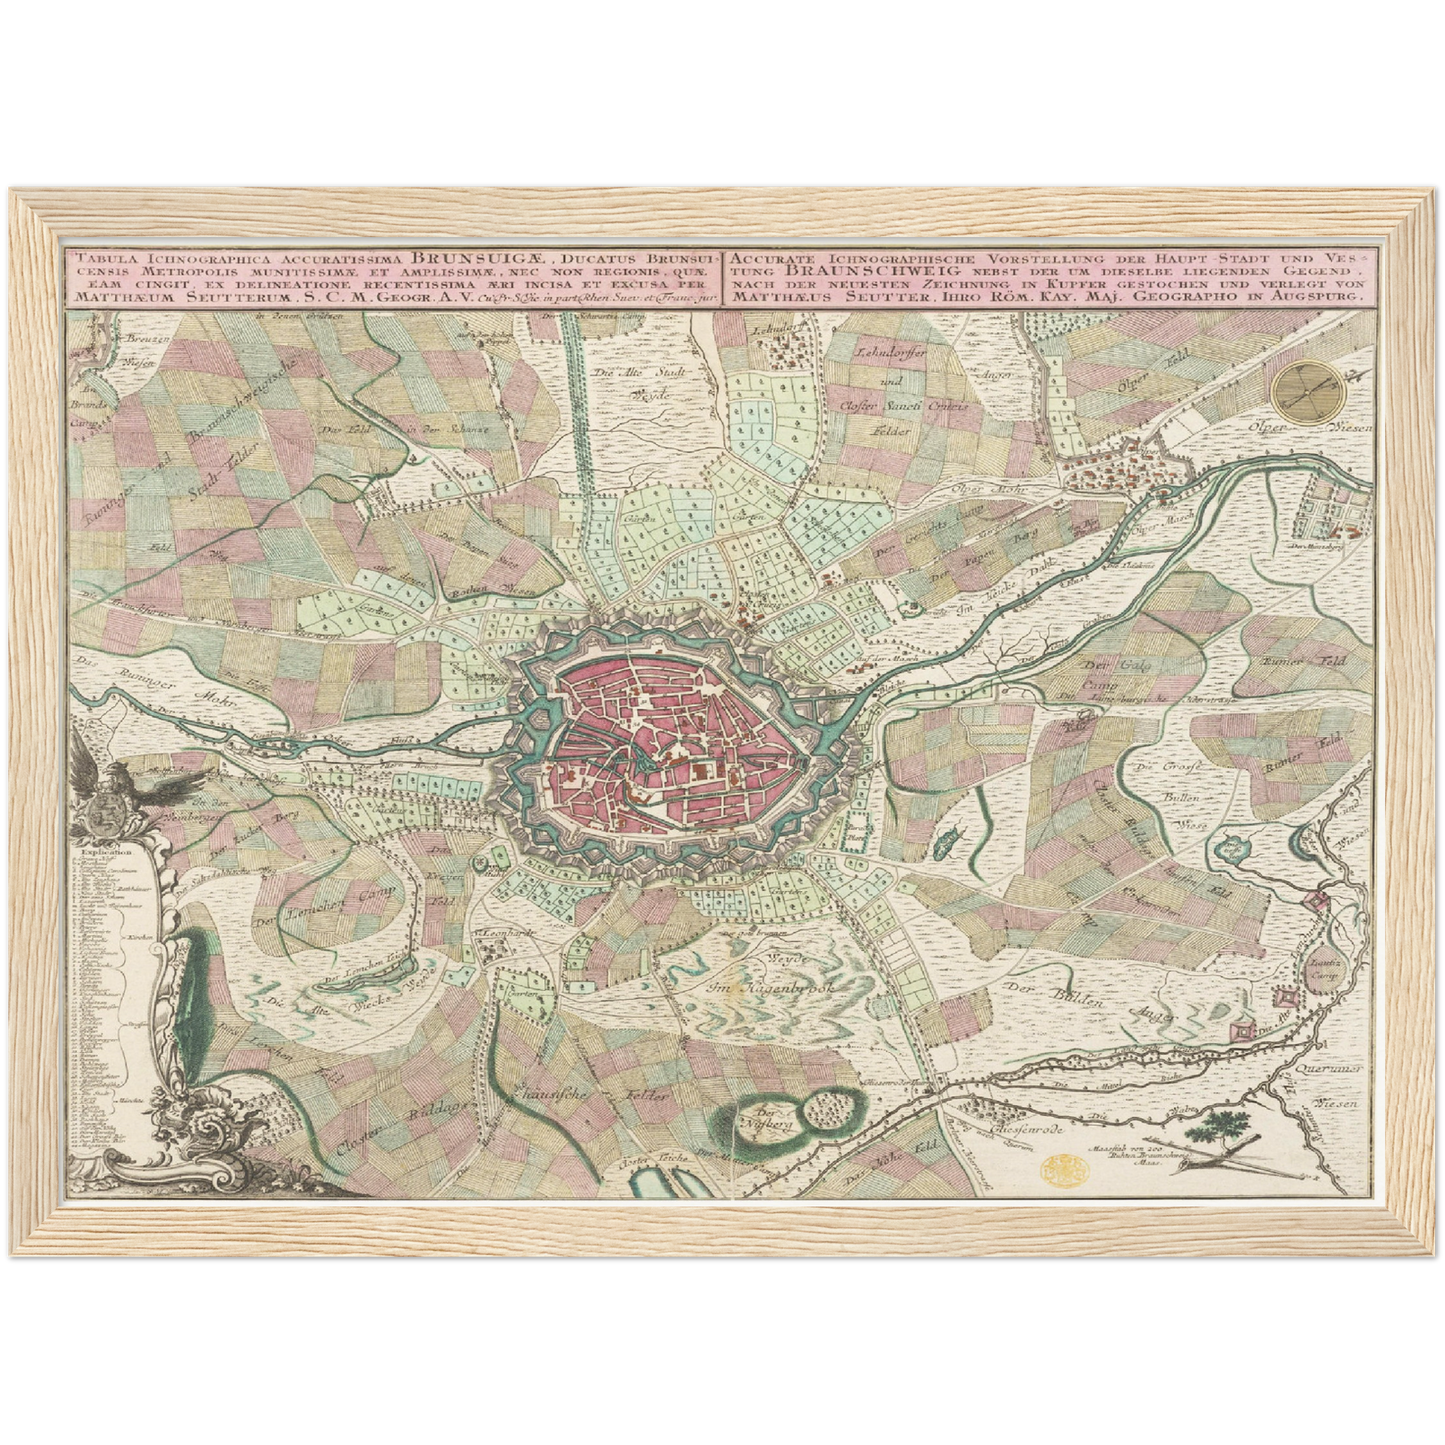 Historischer Stadtplan Braunschweig um 1750